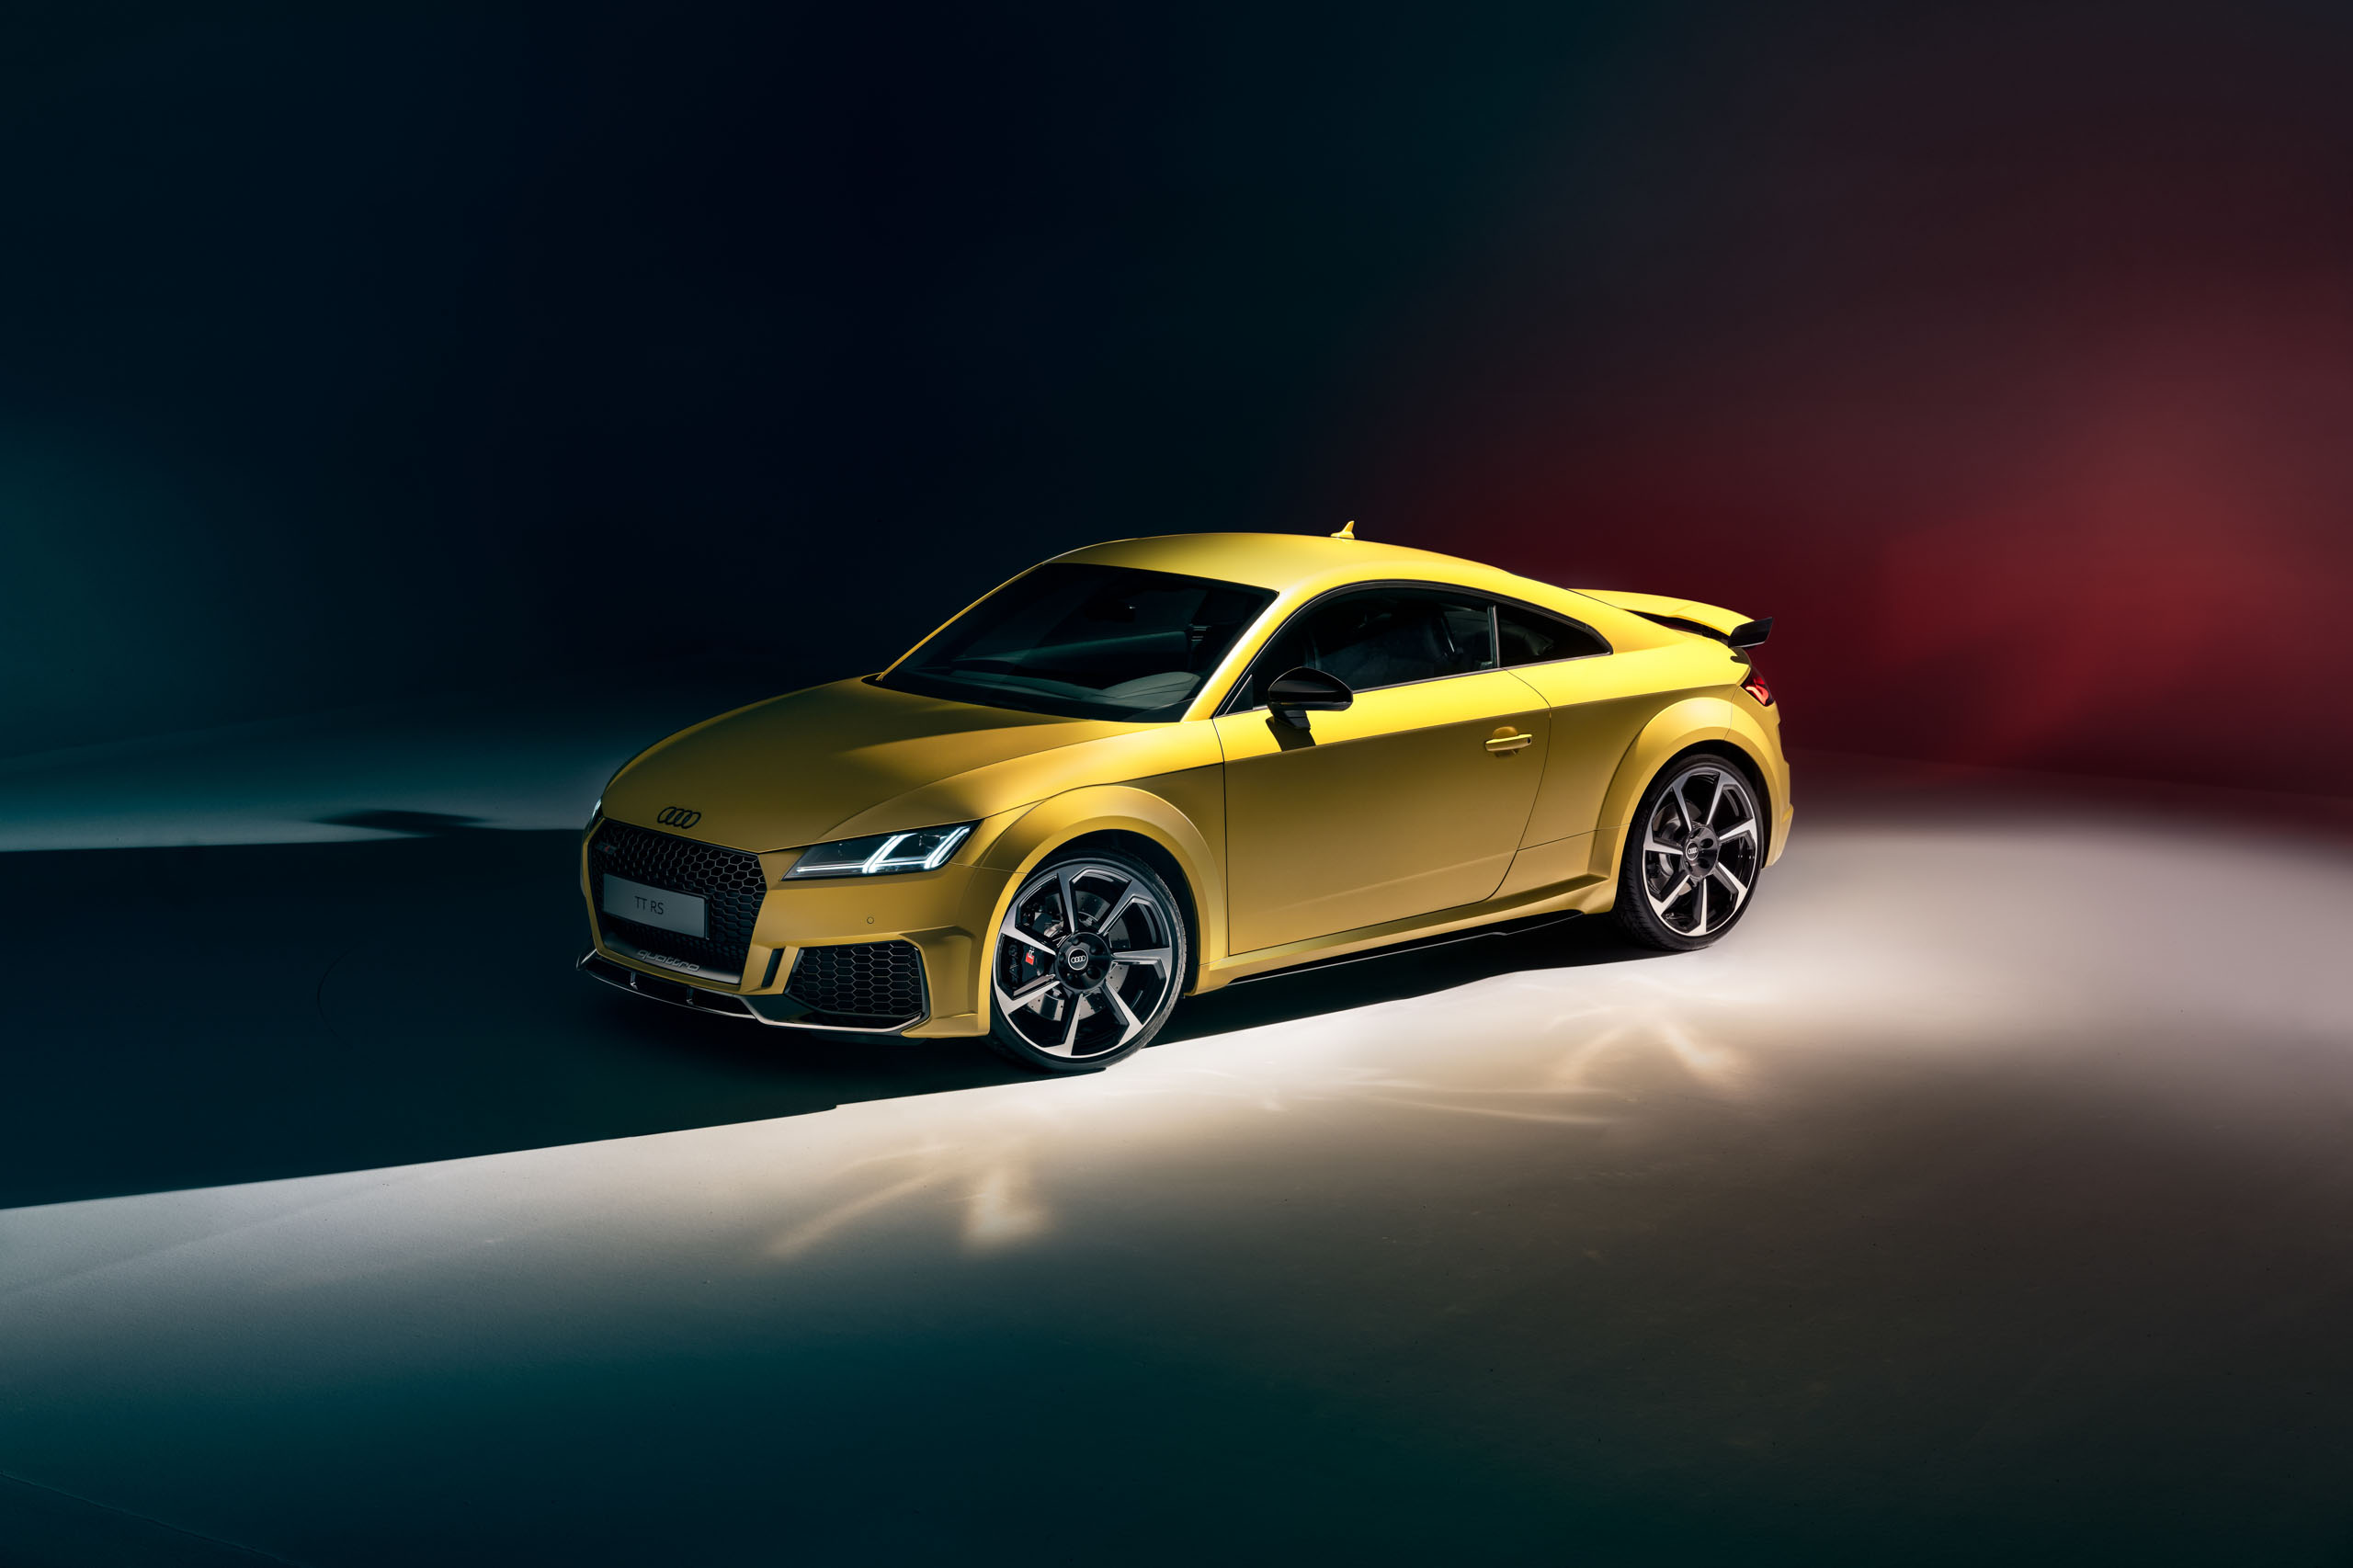 2022 Audi TT und Q3 in Matt-Lack | Fanaticar Magazin